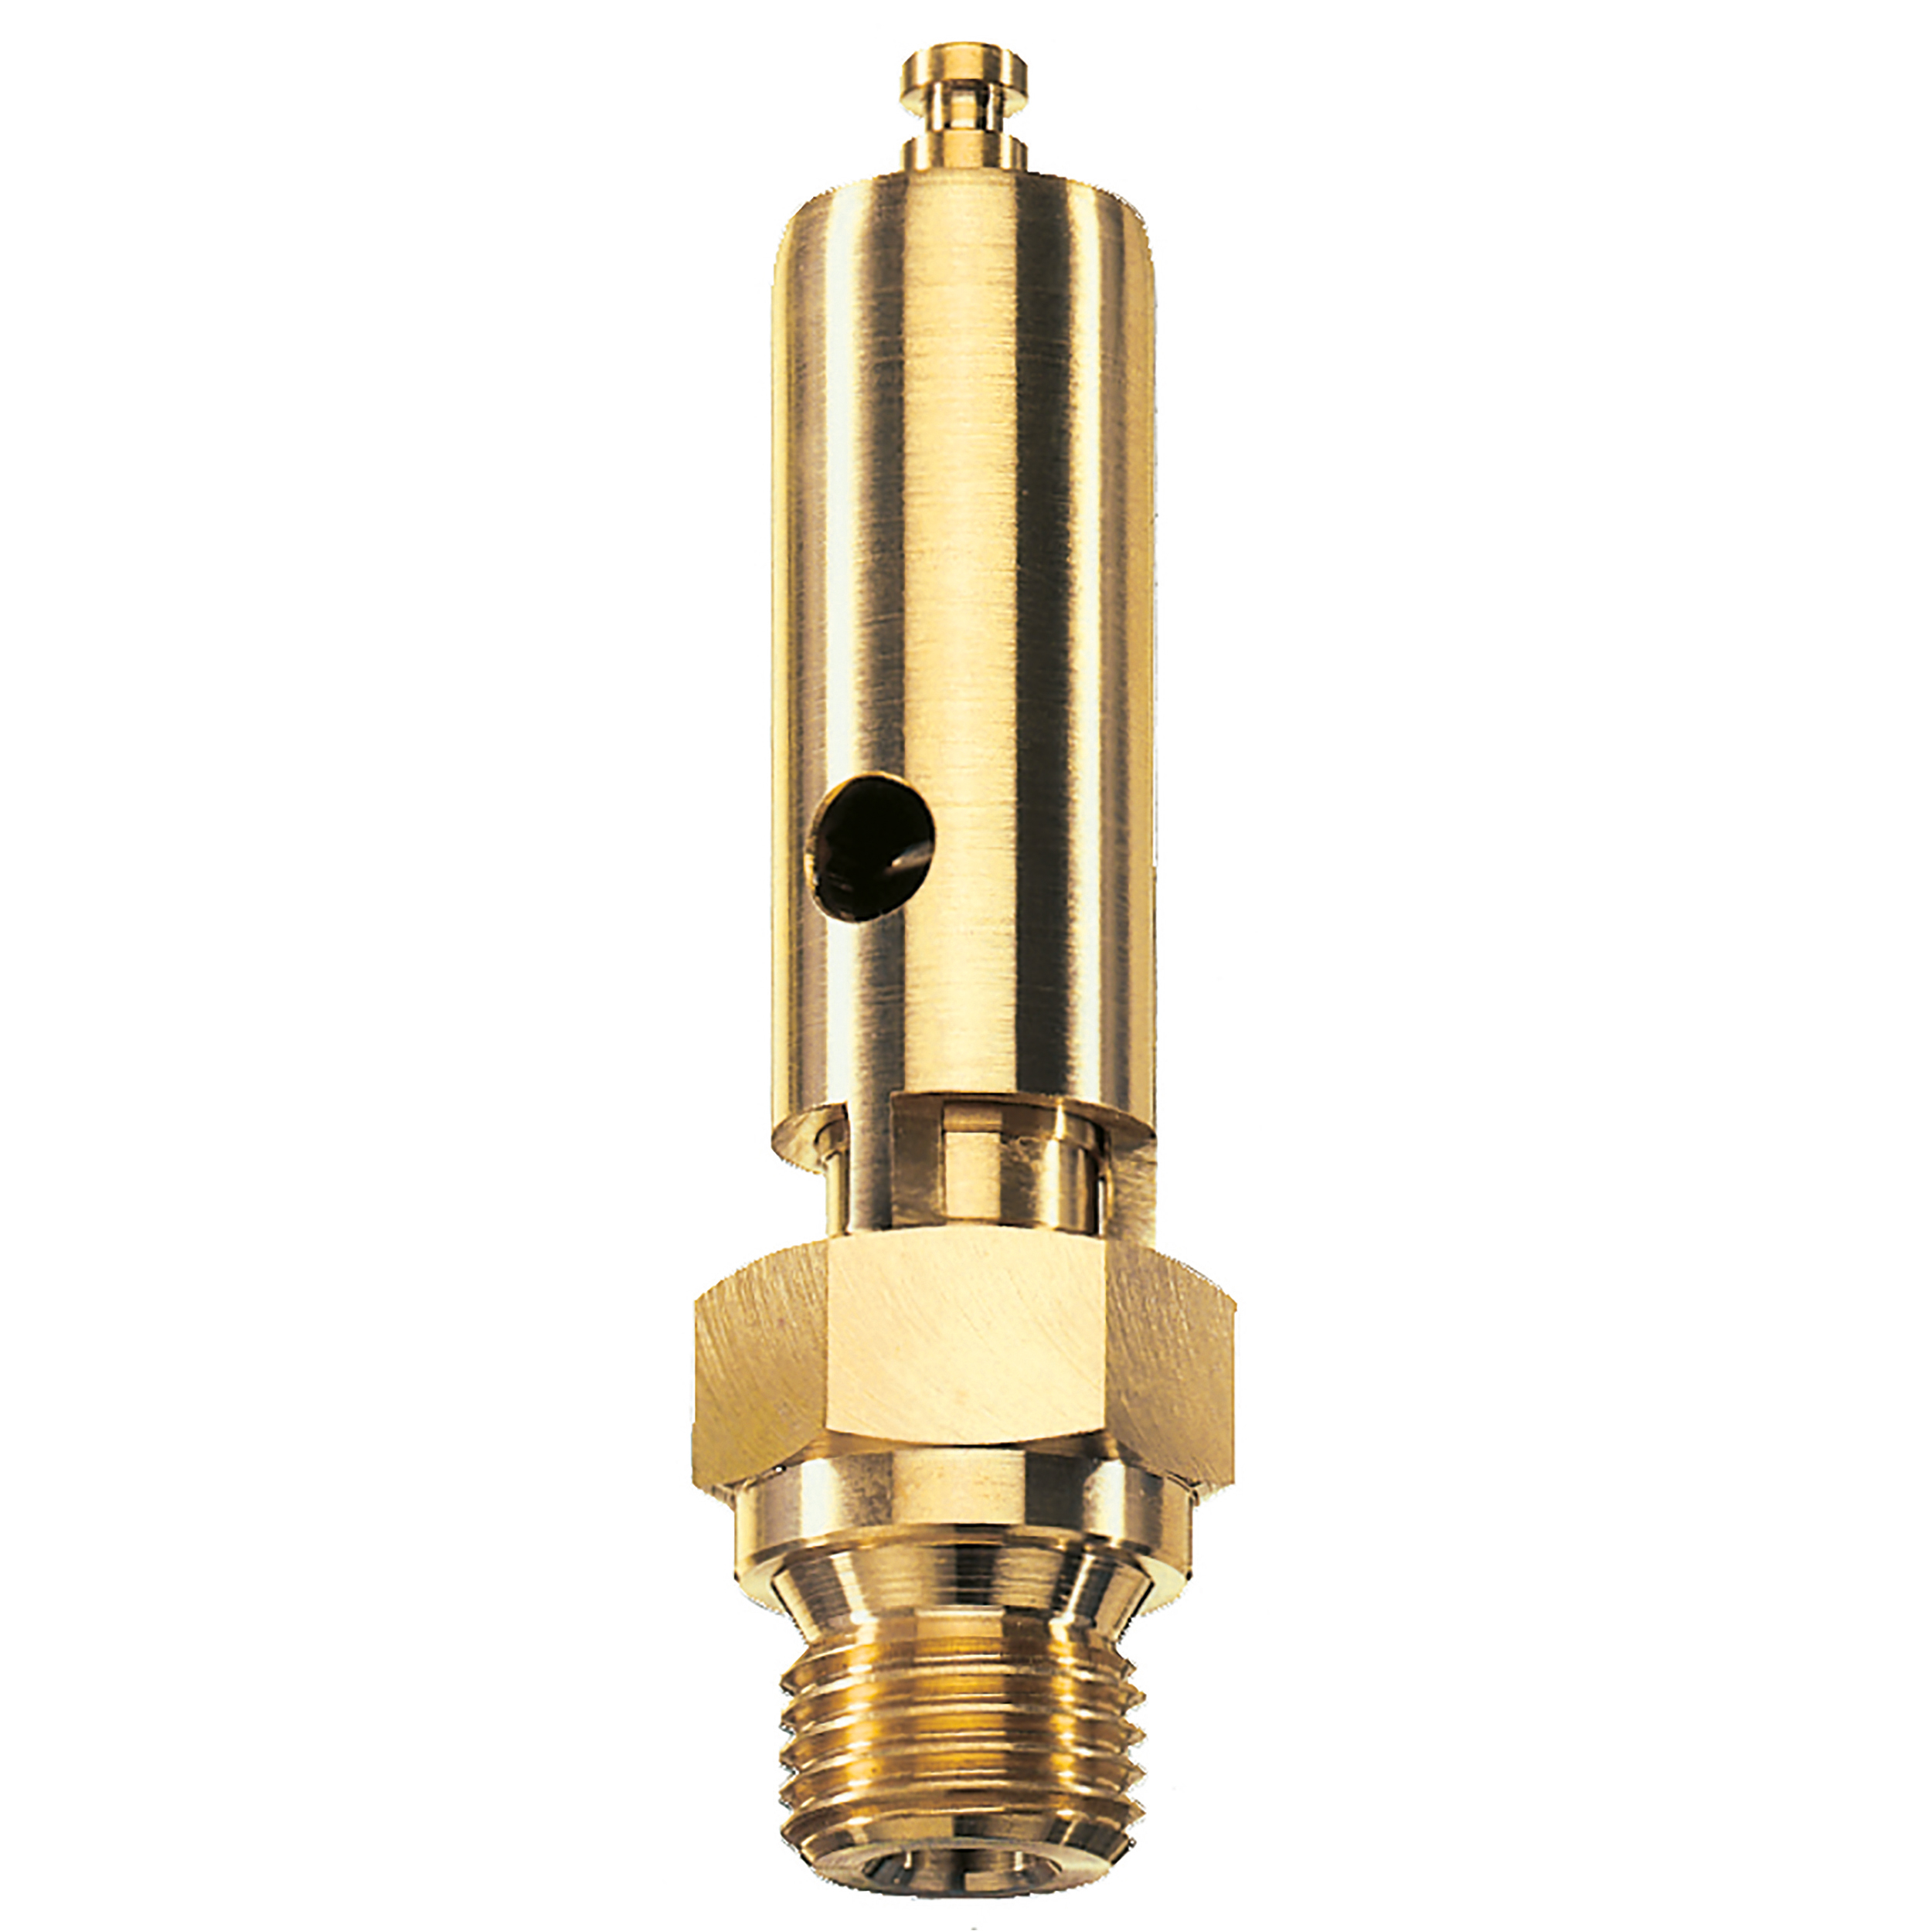 Savety valve component tested DN 6, G⅜, L: 60 mm, seal: FKM, set pressure: 11.4 bar (165,3 psi), TÜV approval